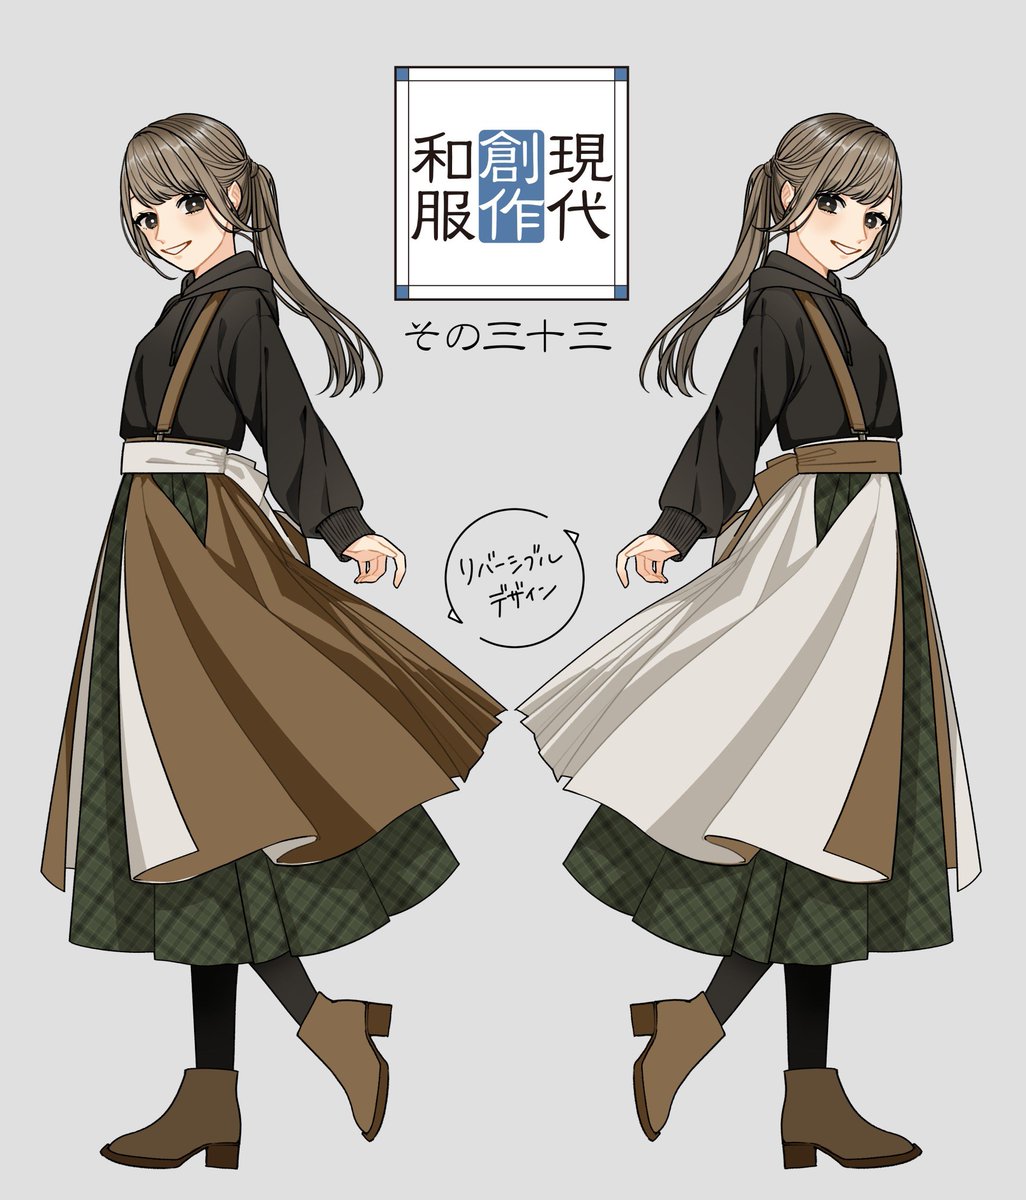 袴風オーバースカート続/コーデ①✨
印象の変わる着回しができちゃう?‍♀️ 